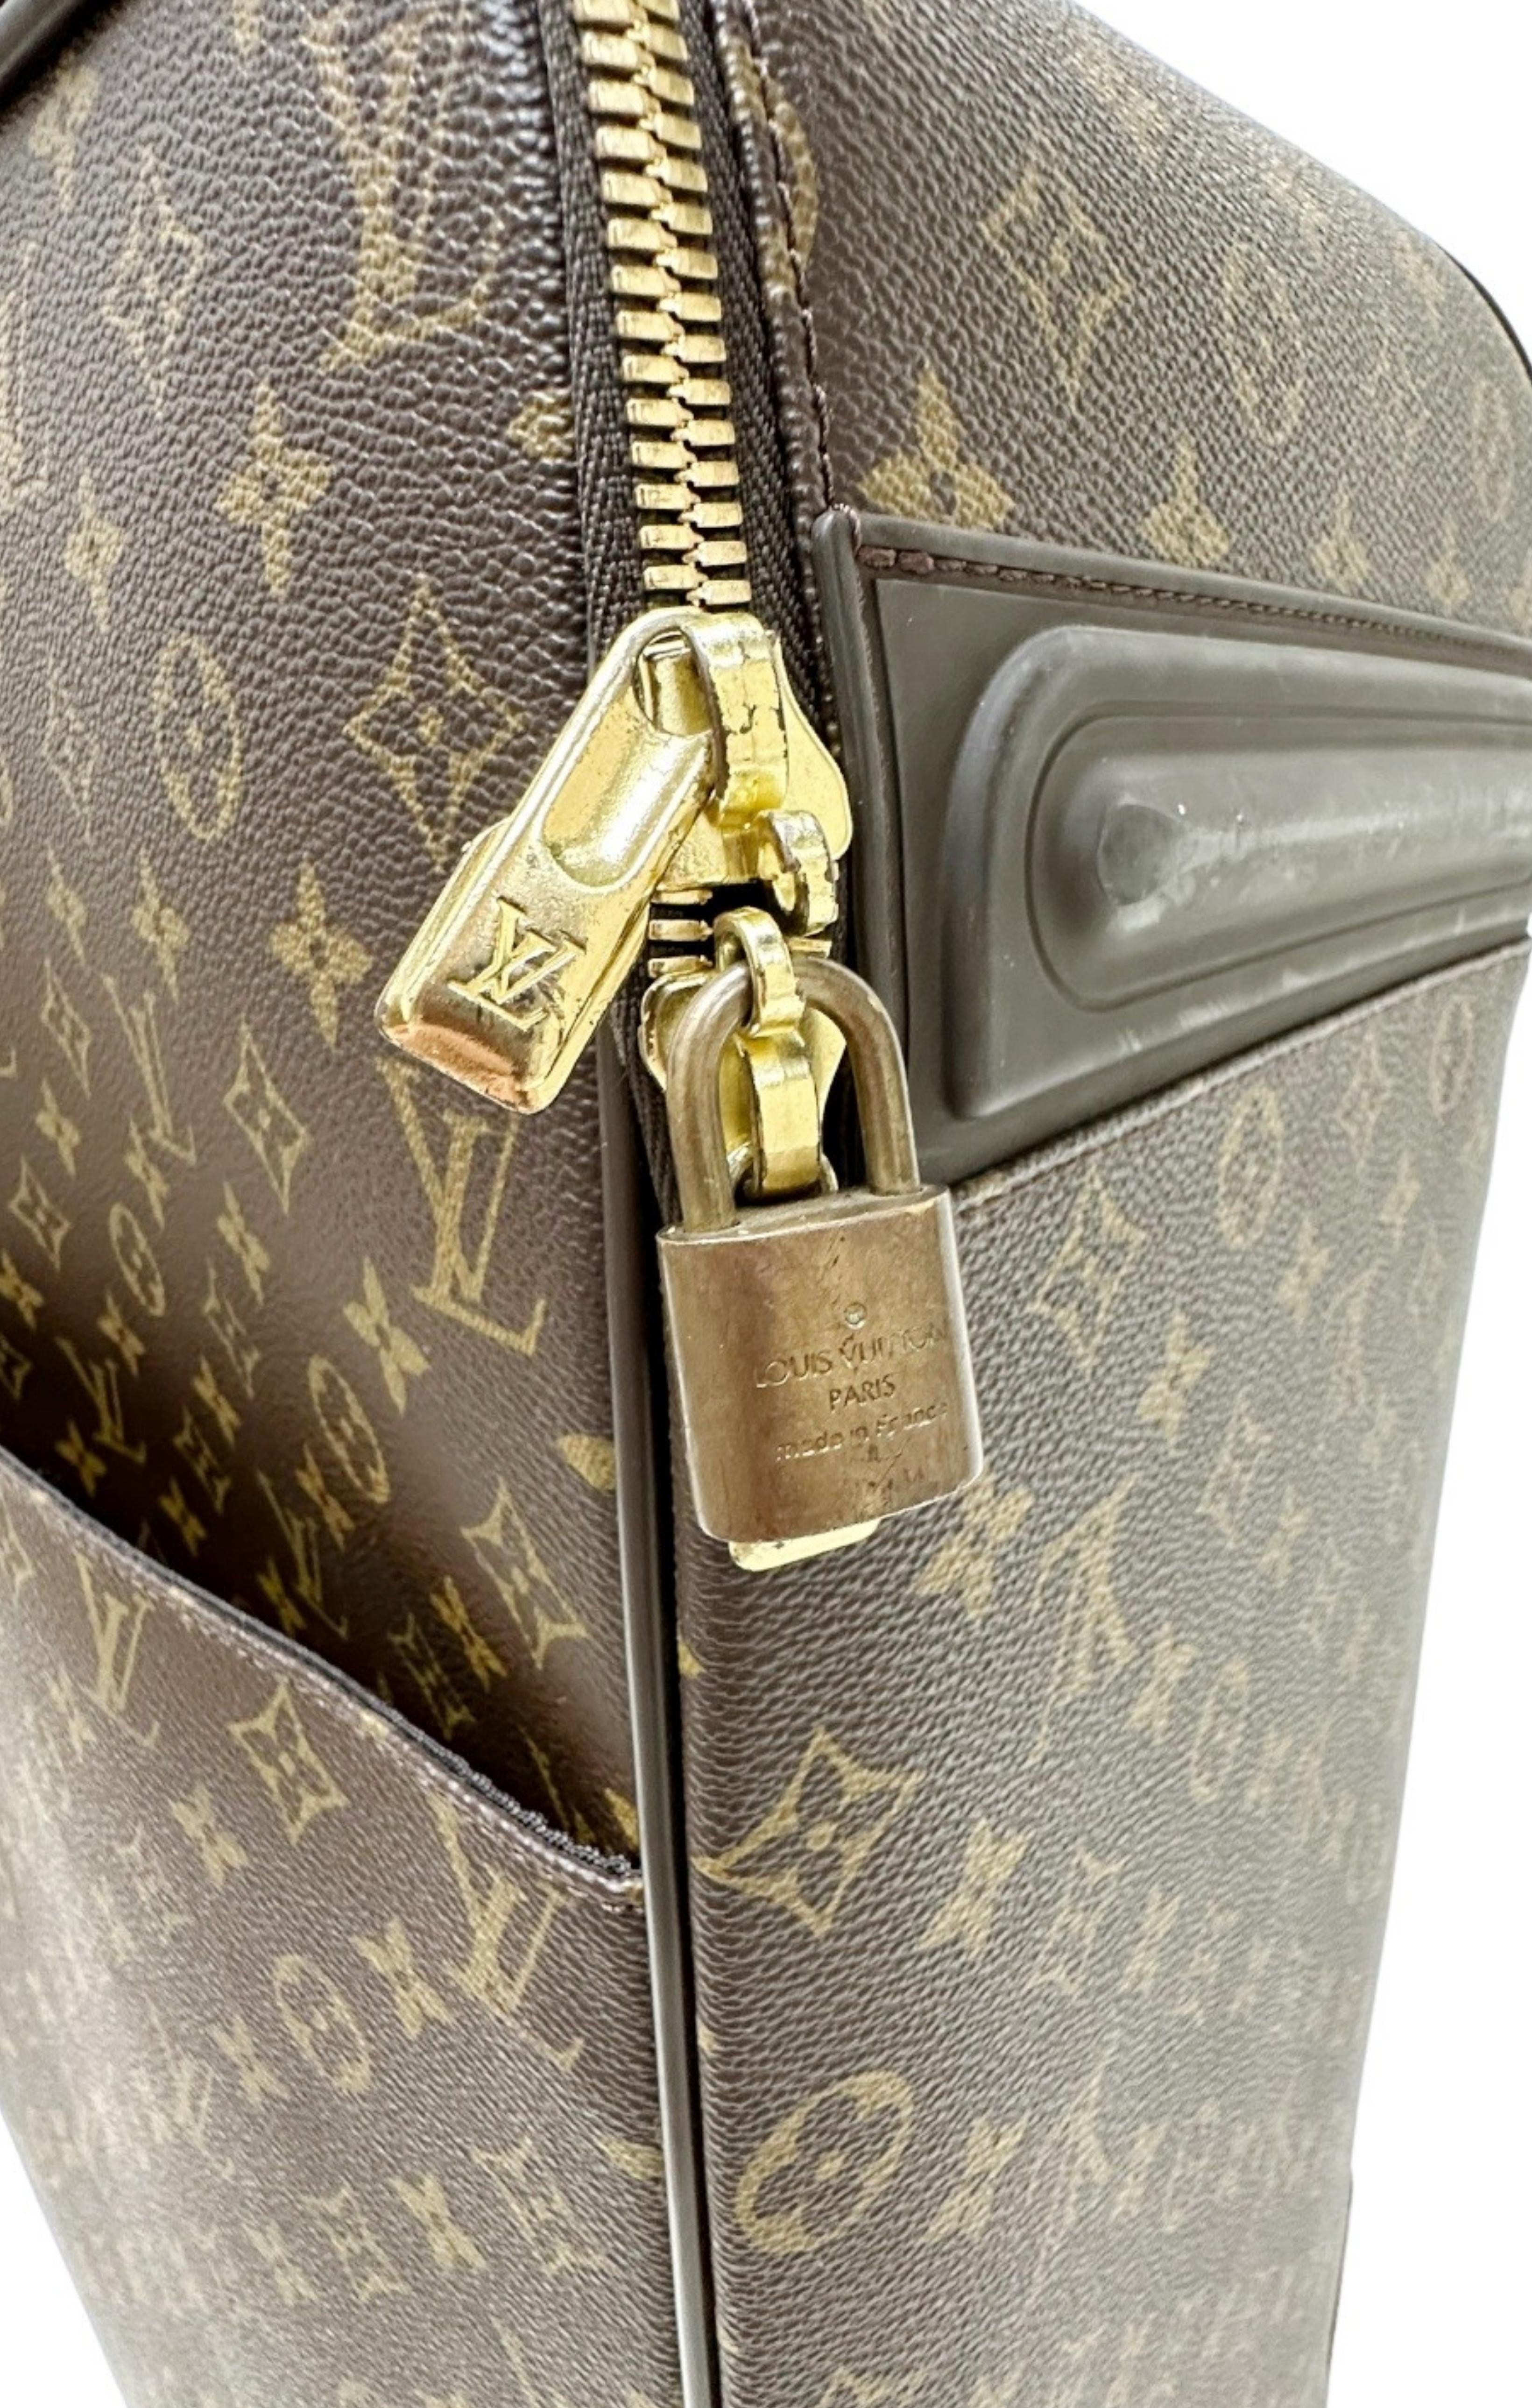 Louis Vuitton vintage 2 piece luggage set, 31x21 Next 18x21